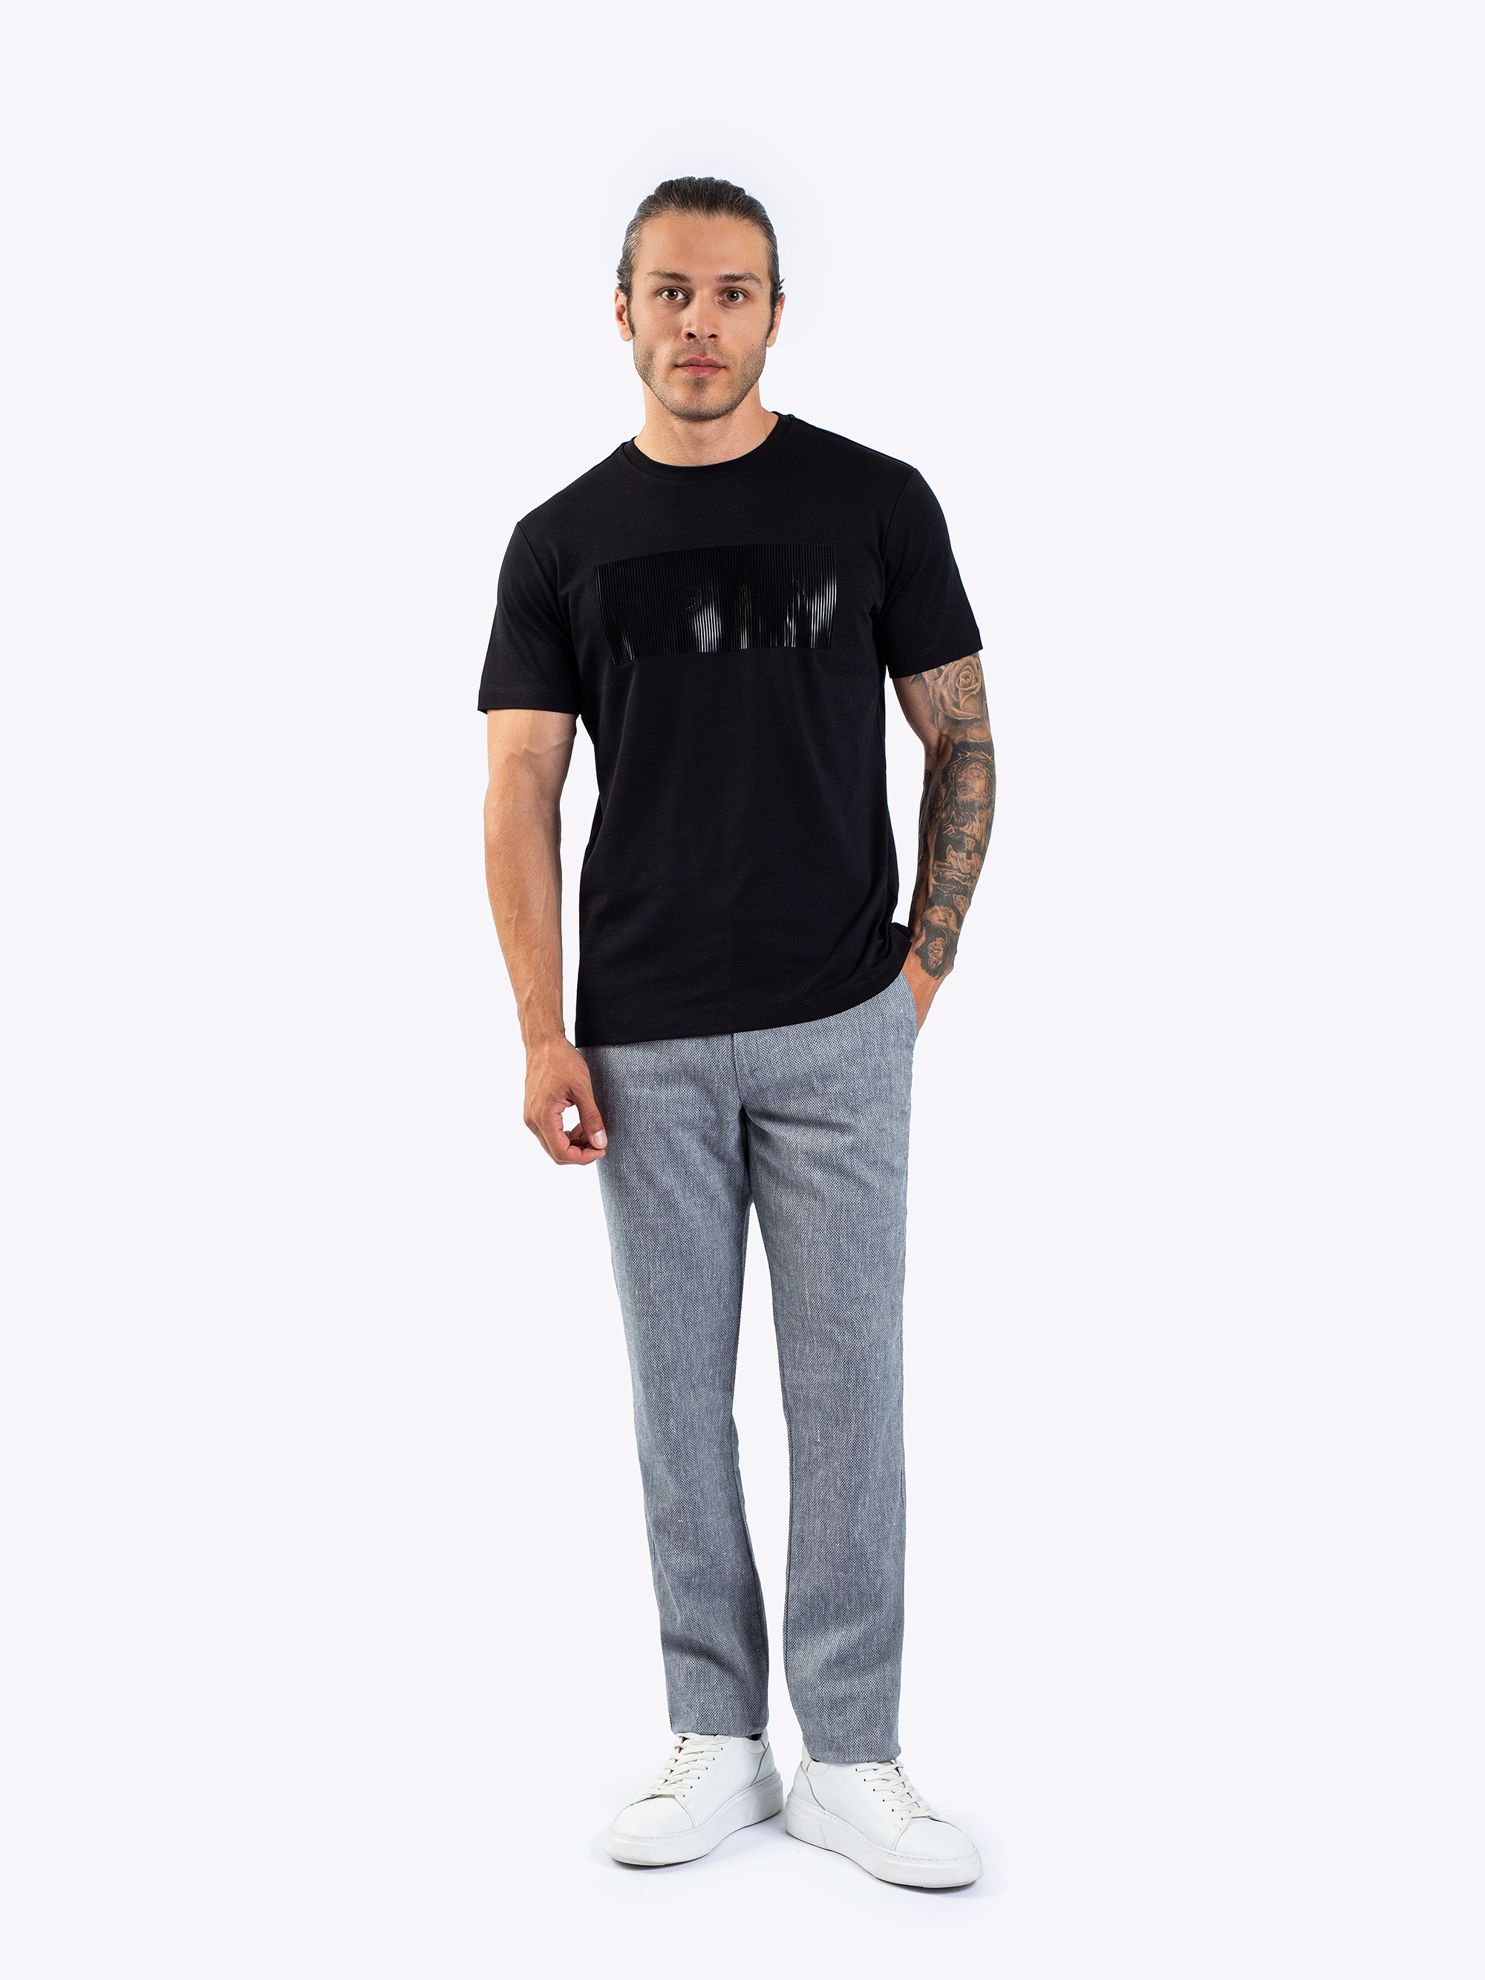 Karaca Erkek Slim Fit Tişört-Siyah. ürün görseli